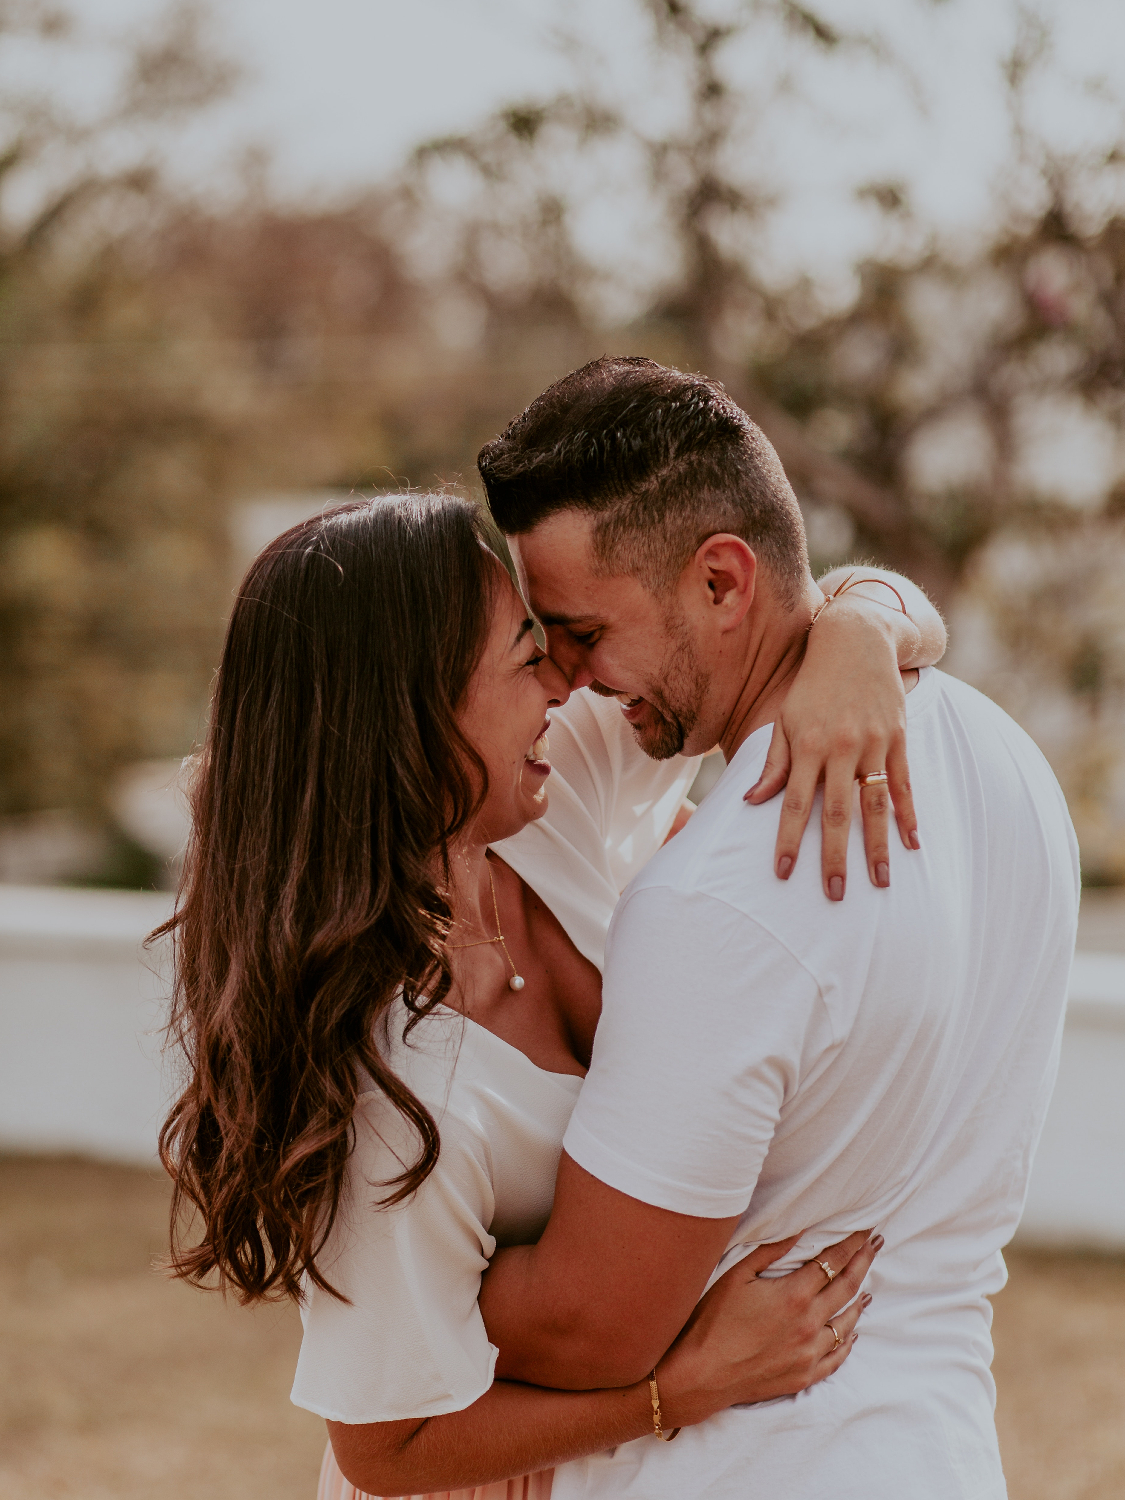 Mann hält seine lachende Frau liebevoll im Arm - Momente des Schenkens | Emotionsbild